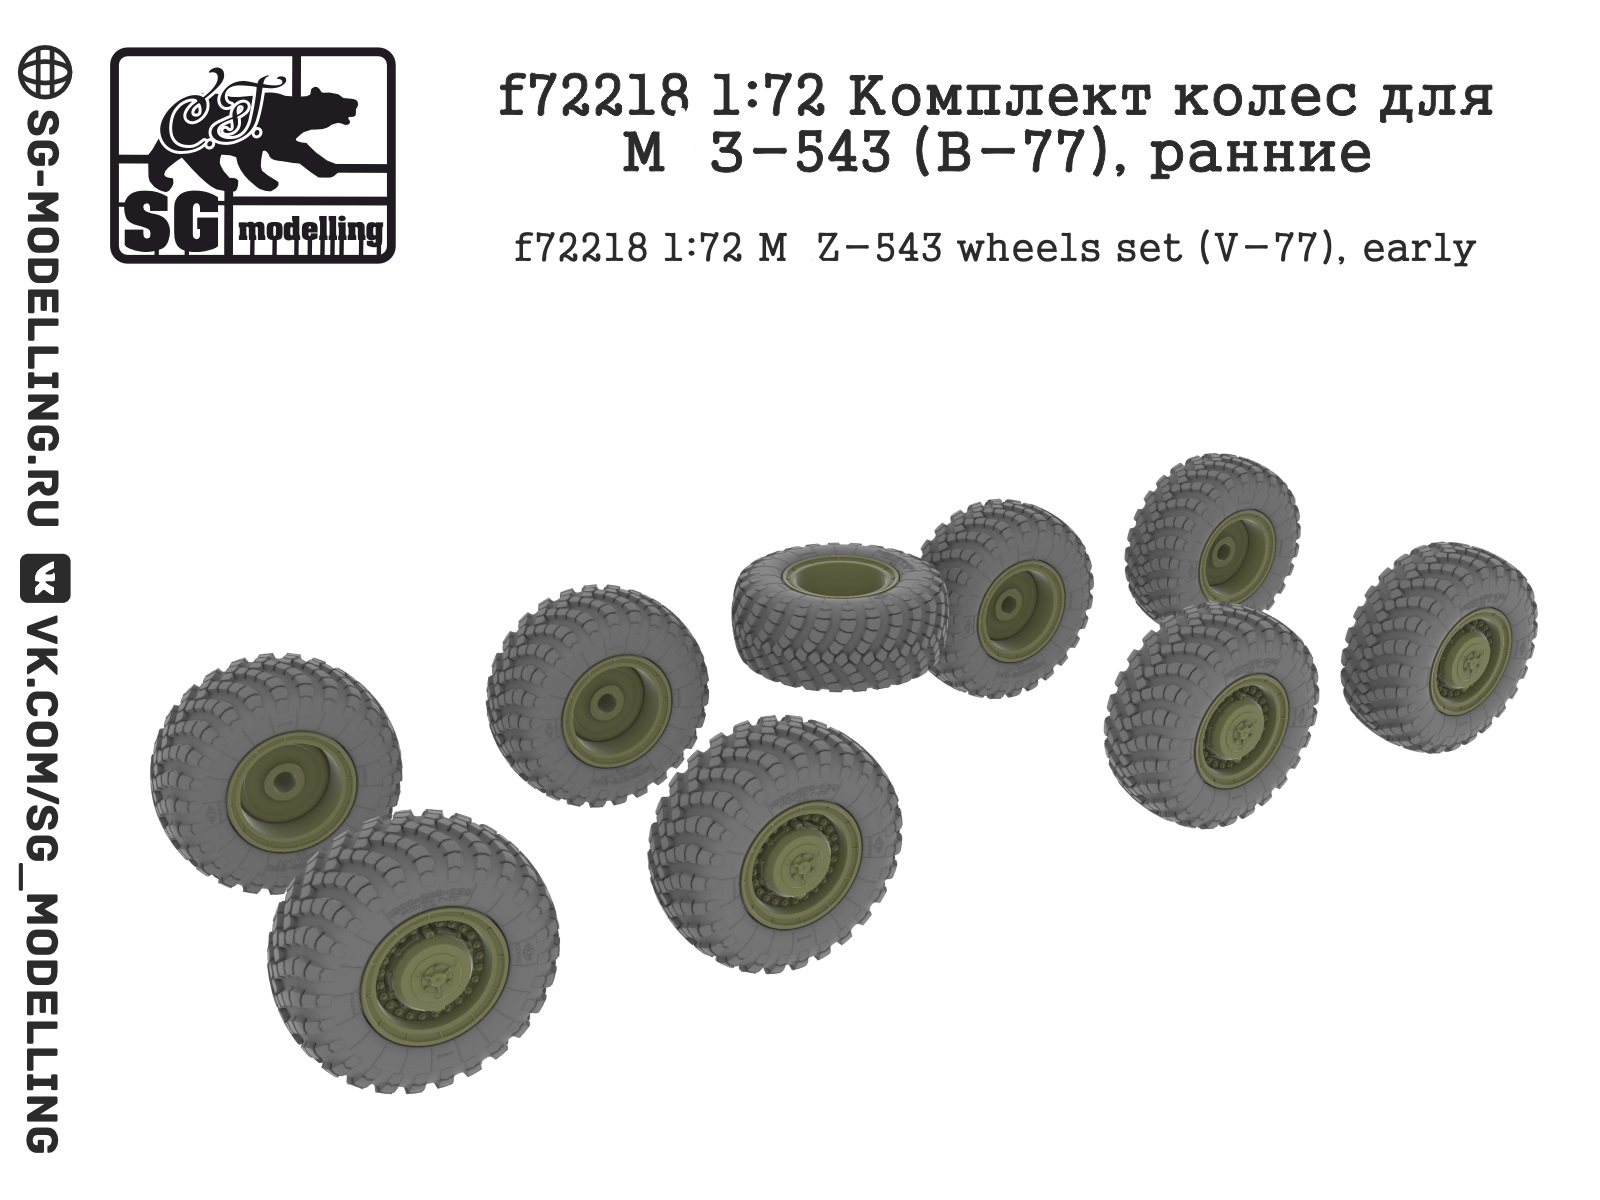 f72218  дополнения из смолы  Комплект колес для М@З-543 (В-77), ранние  (1:72)